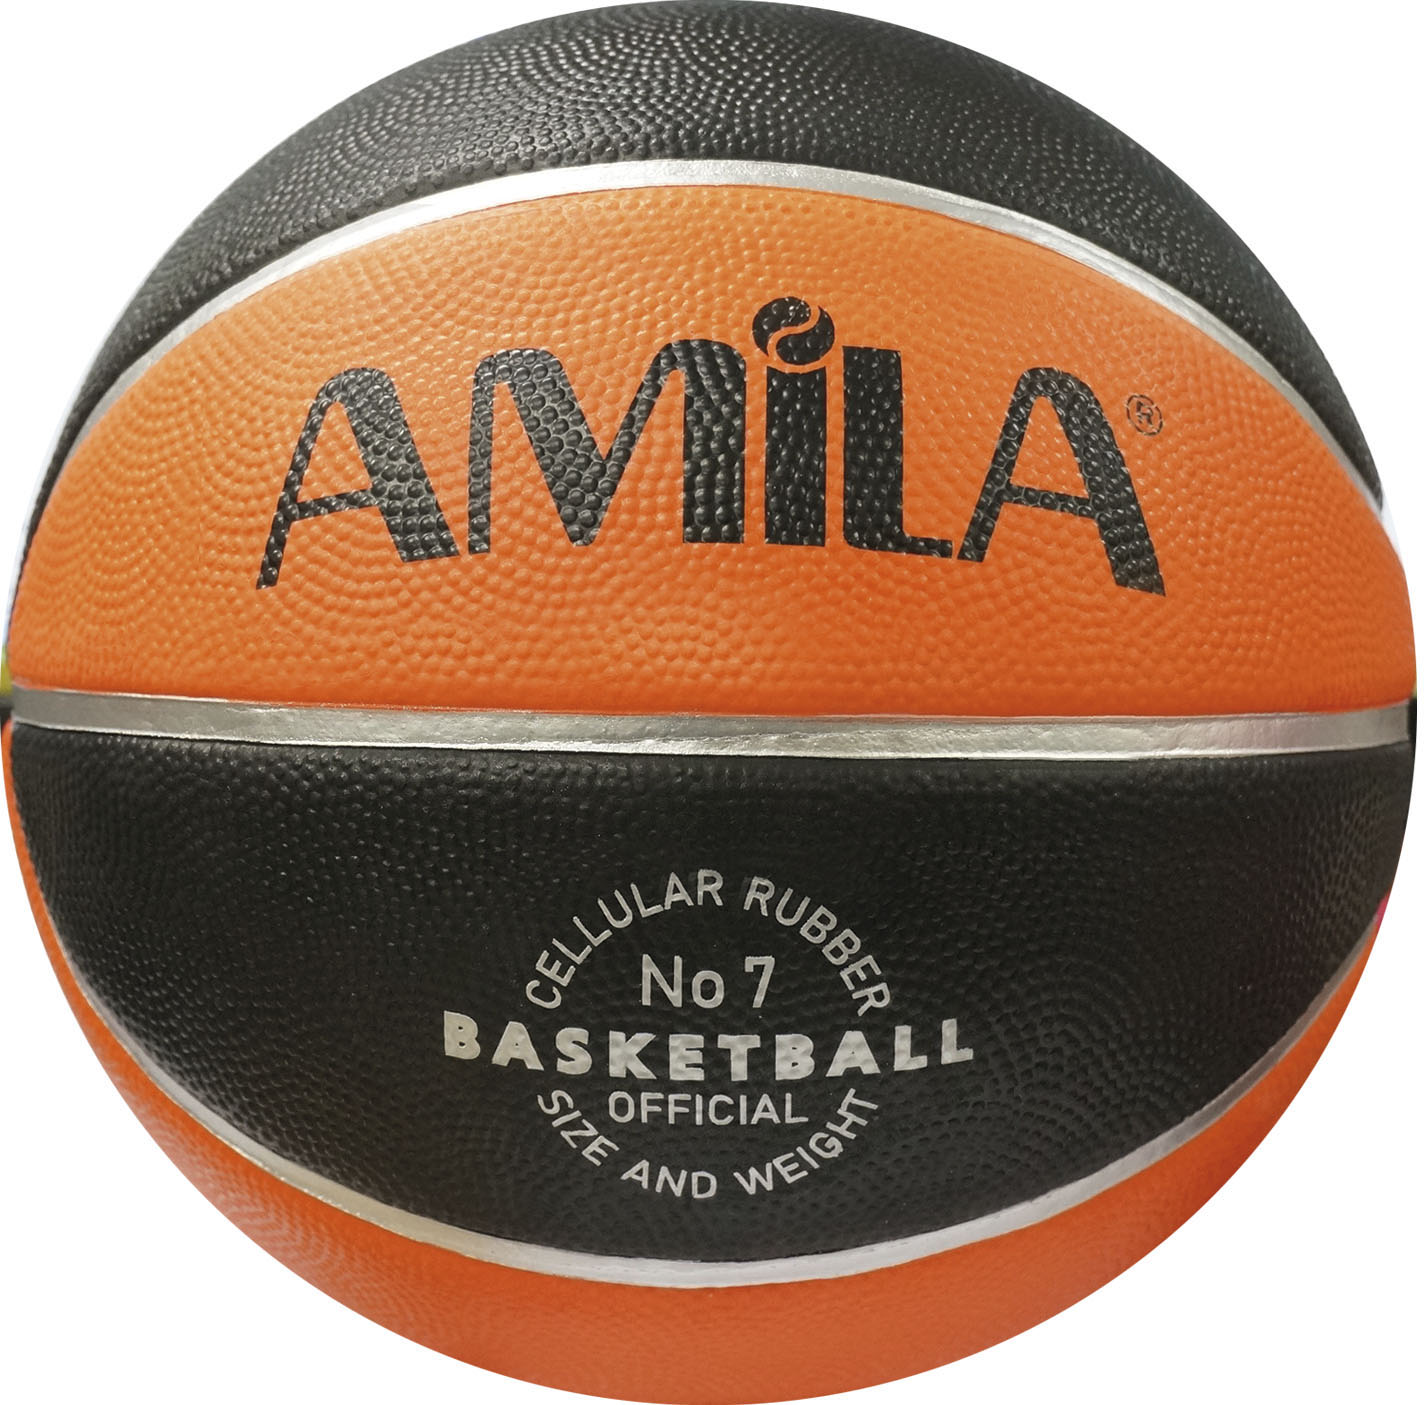 Μπάλα Basket AMILA 0BB-41516 No. 7